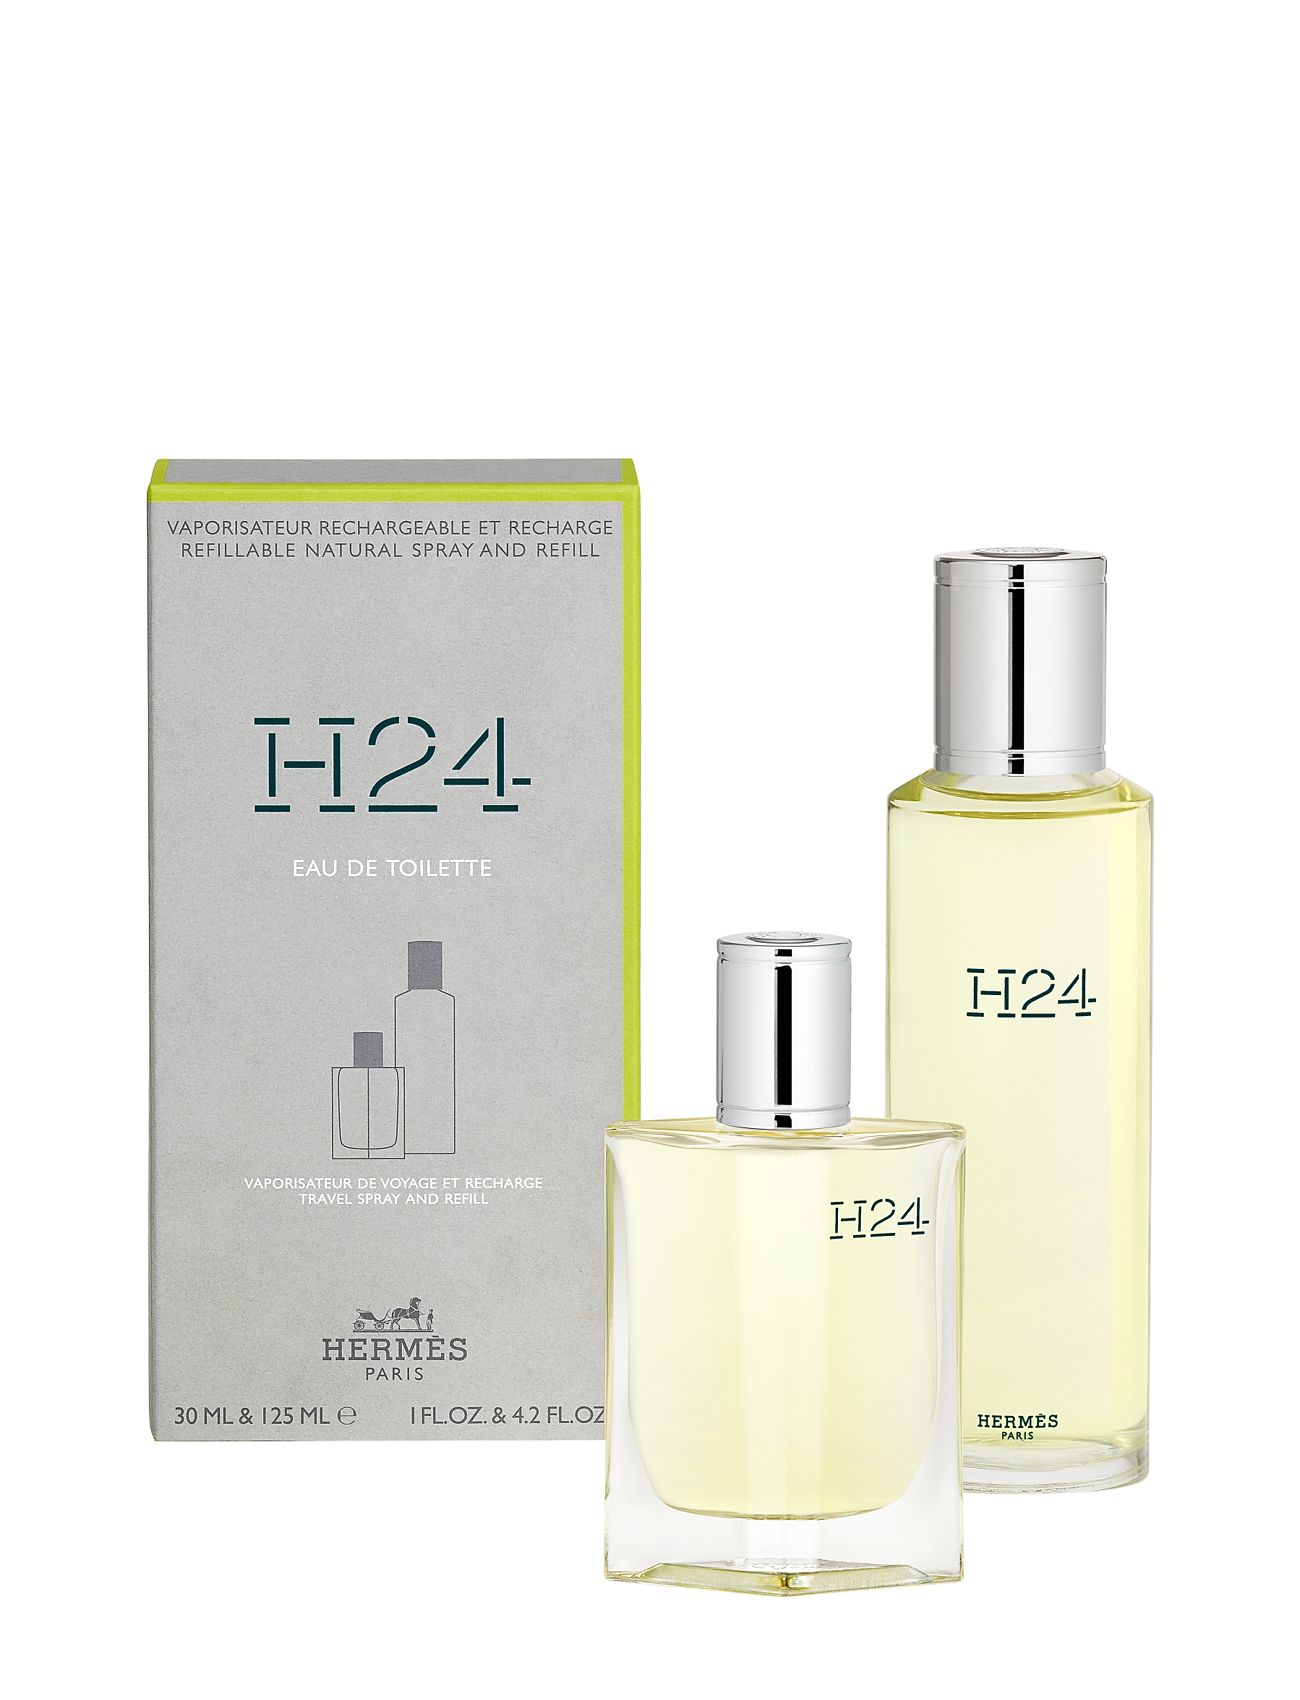 H24 Edt Refill Spray + Bottle Refill Parfume Eau De Parfum Nude HERMÈS